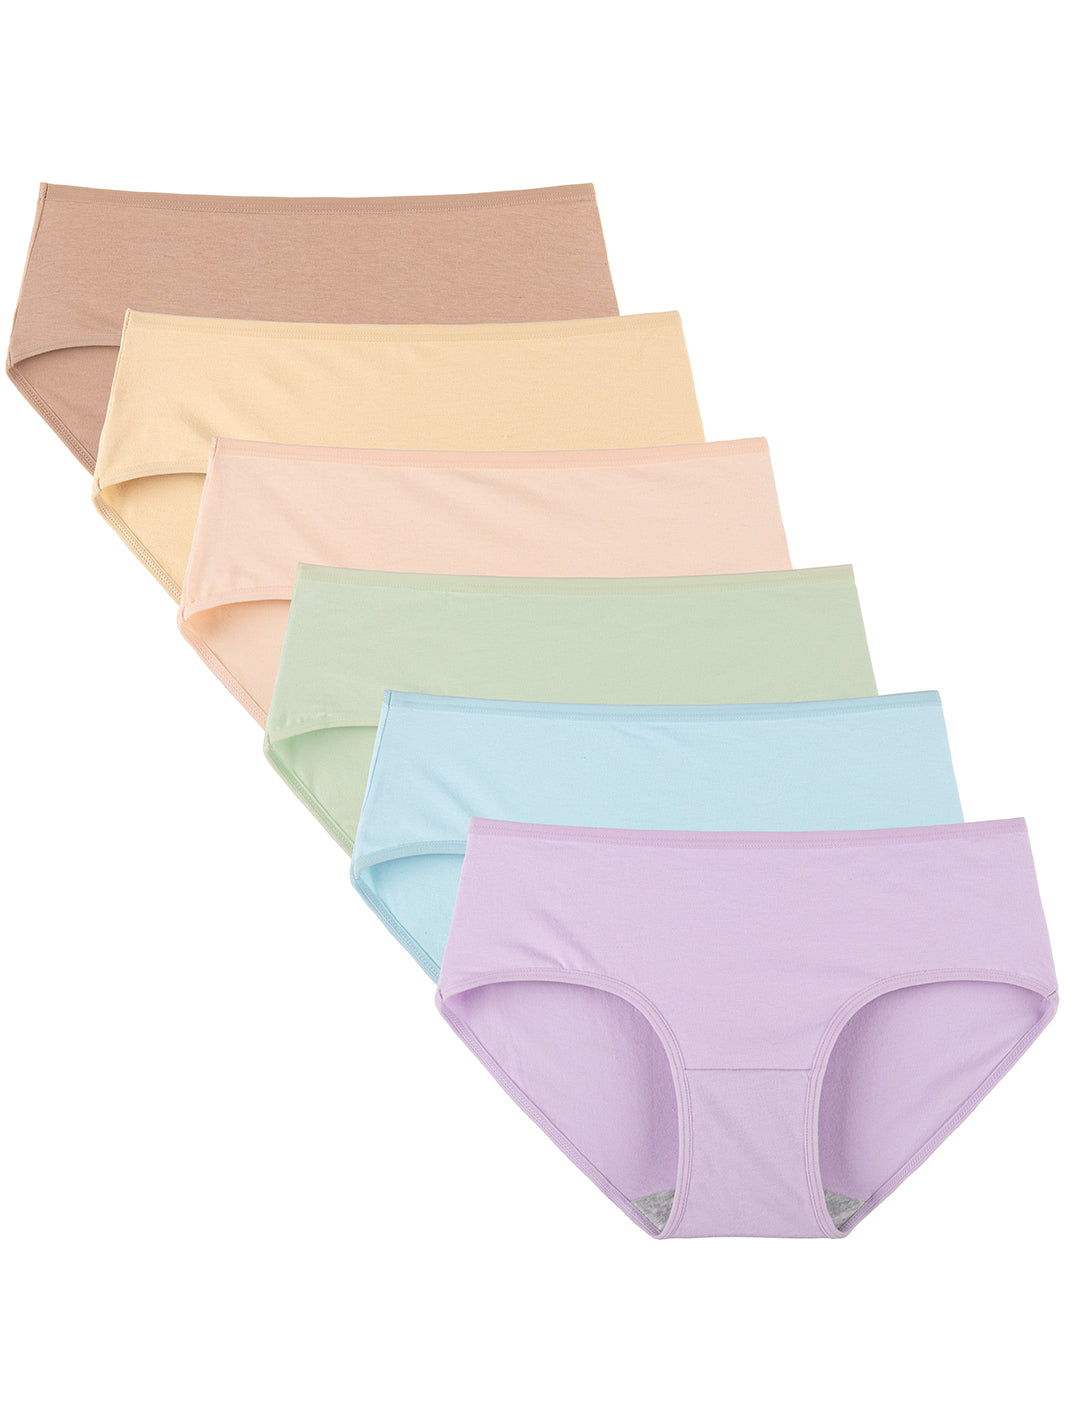 Vividmoo 6PACK Stretchy Cotton Hipster Briefs underwear Womens